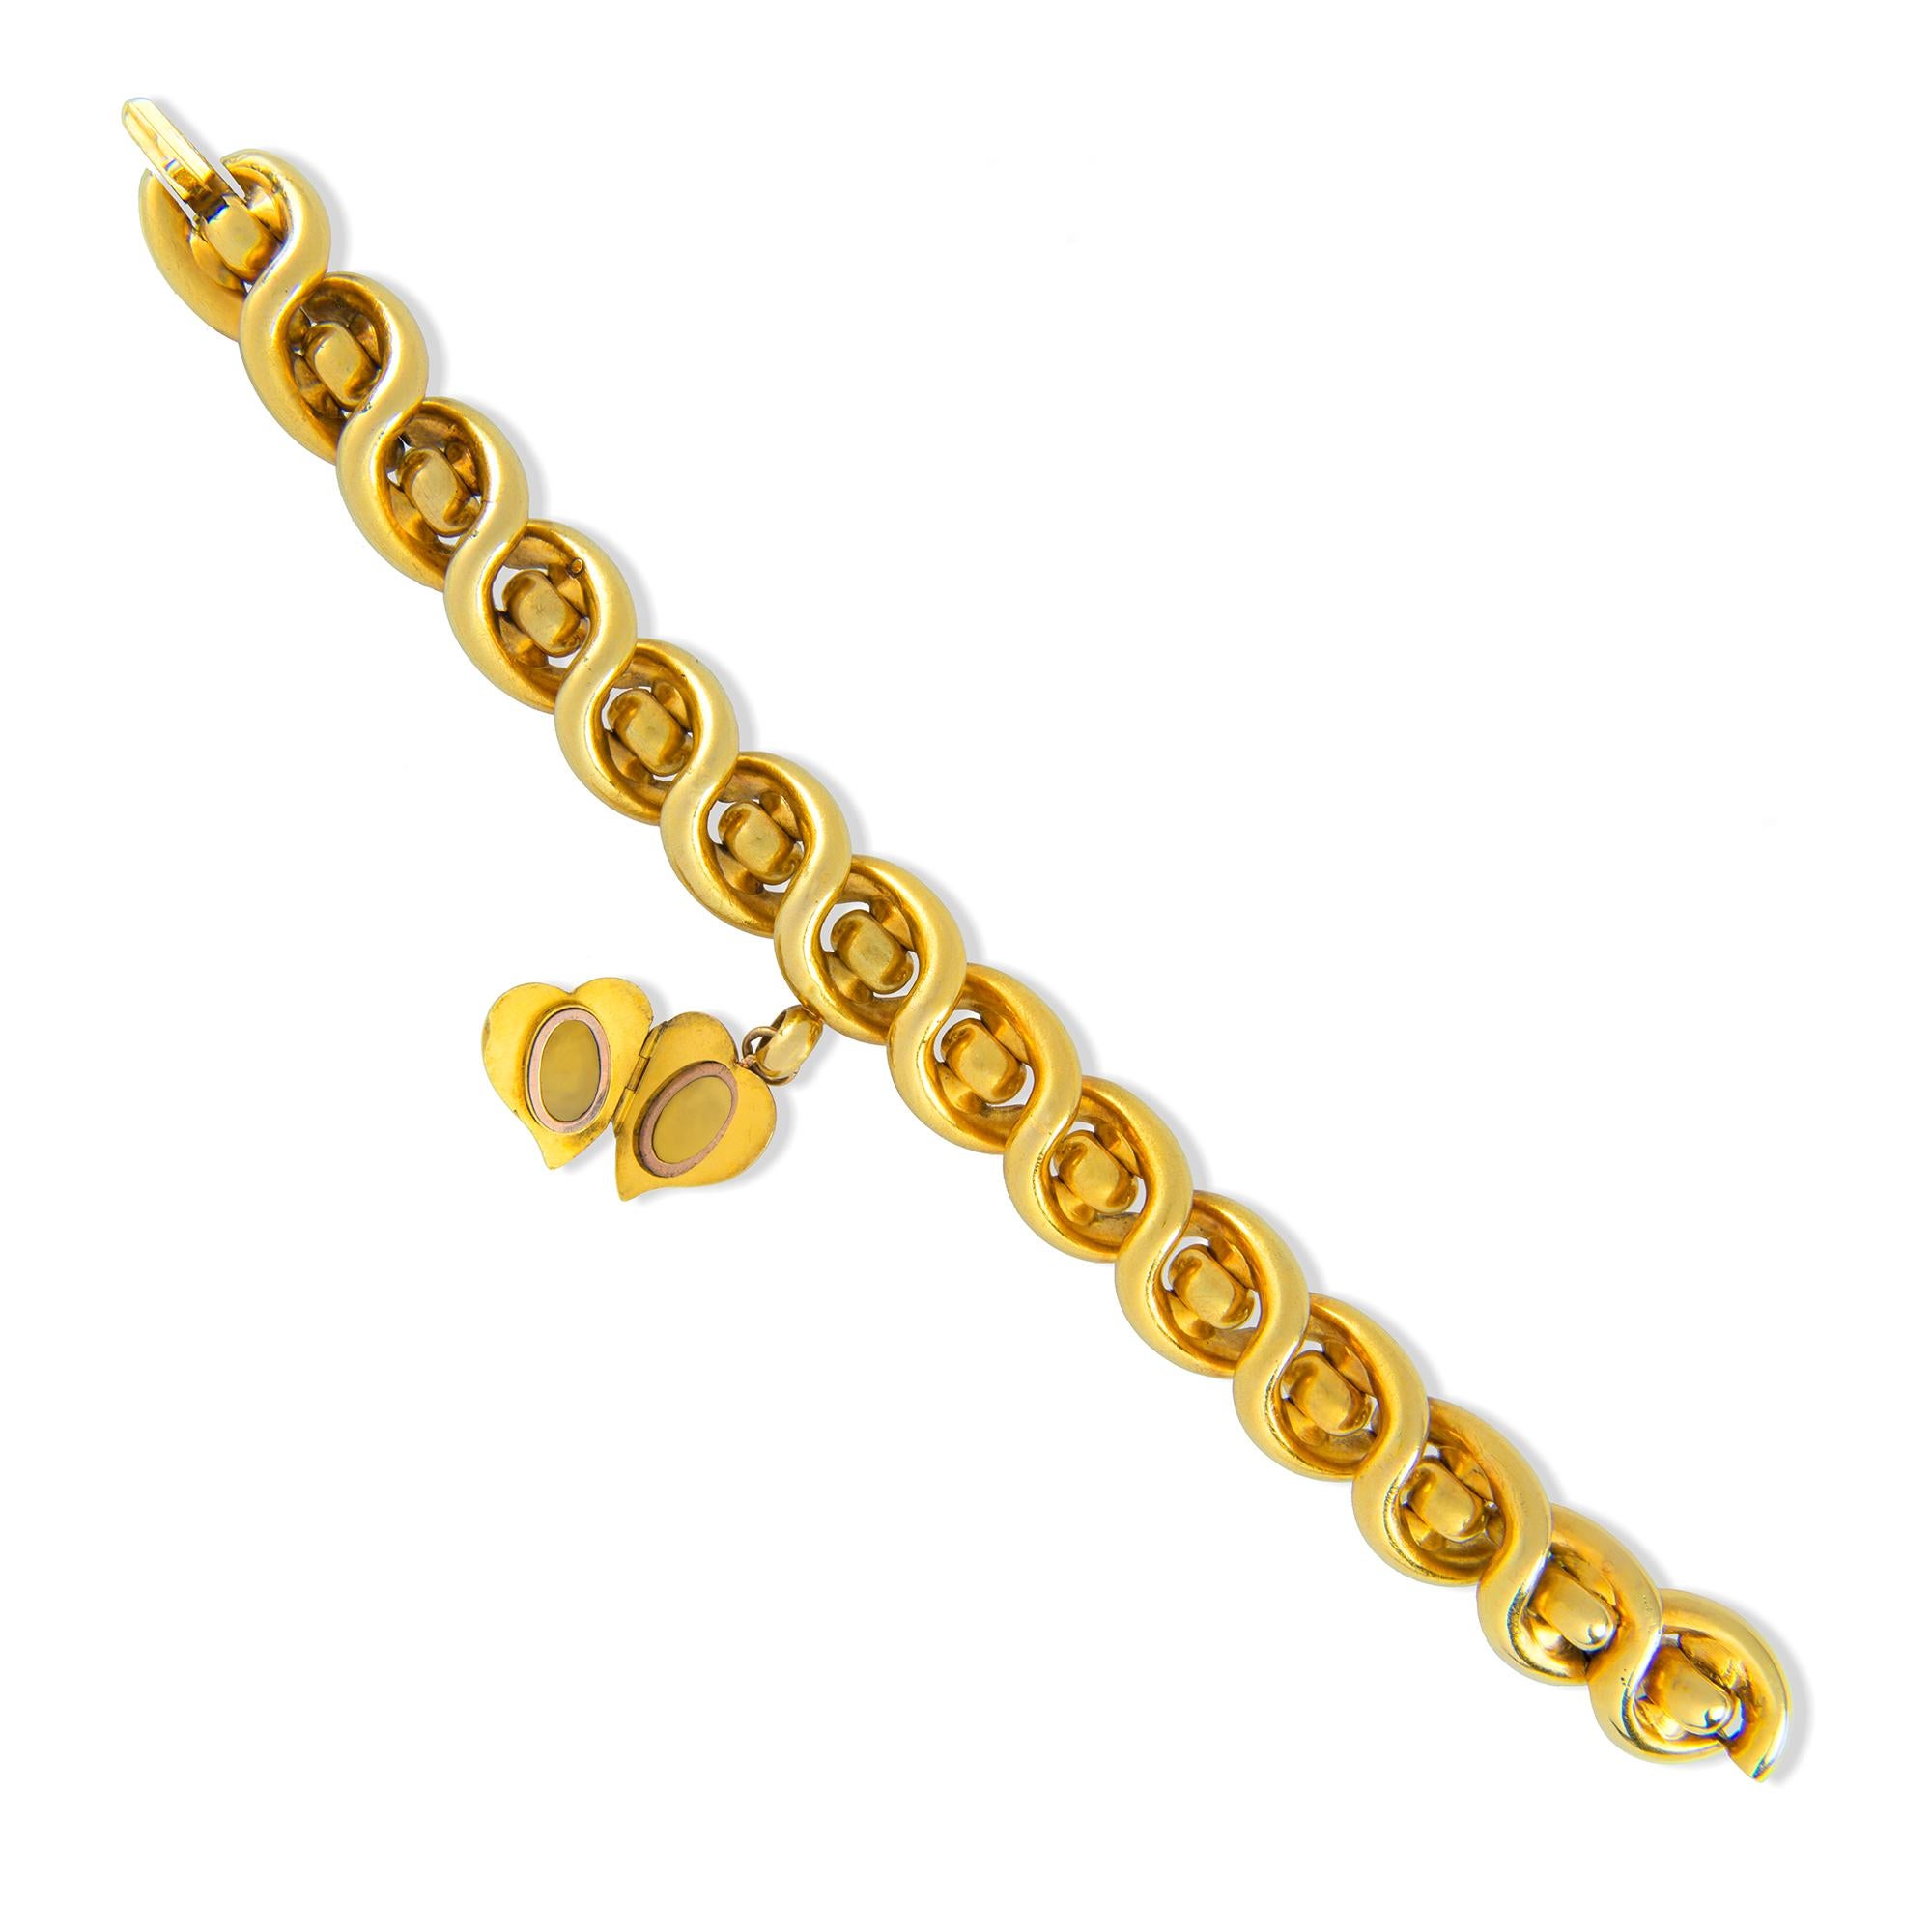 kai chain model gold